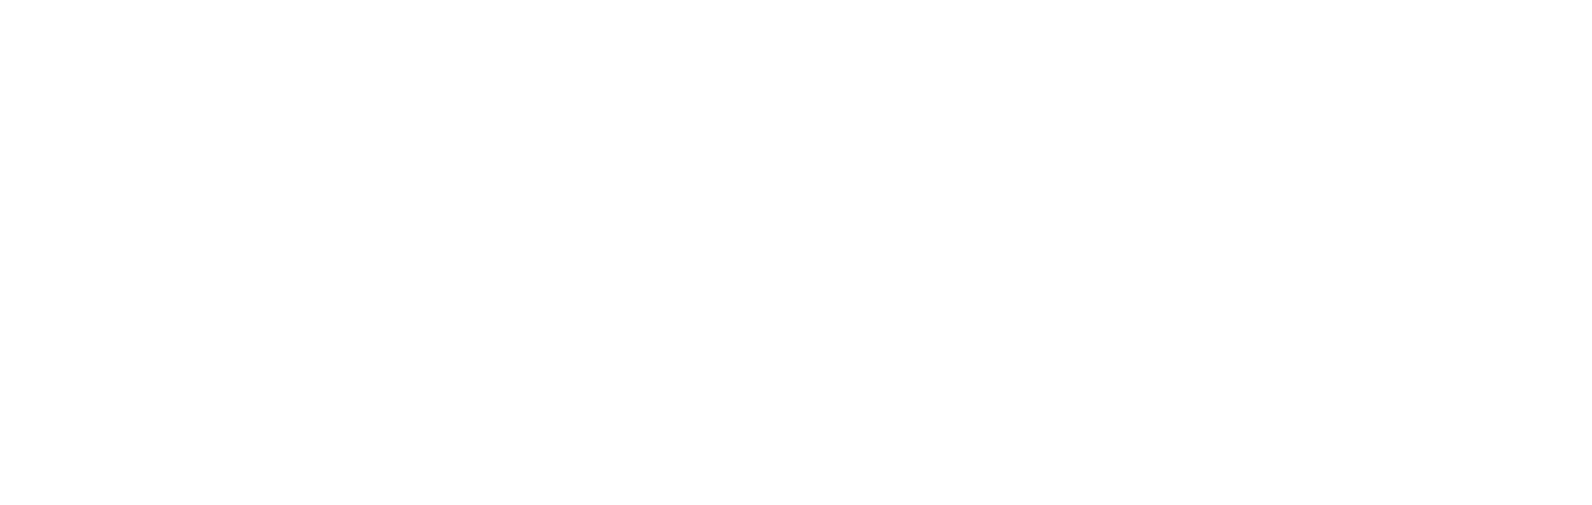 https://moisturecontrol.com.au/wp-content/uploads/2021/12/mcs-logo-reverse-rgb-large.png